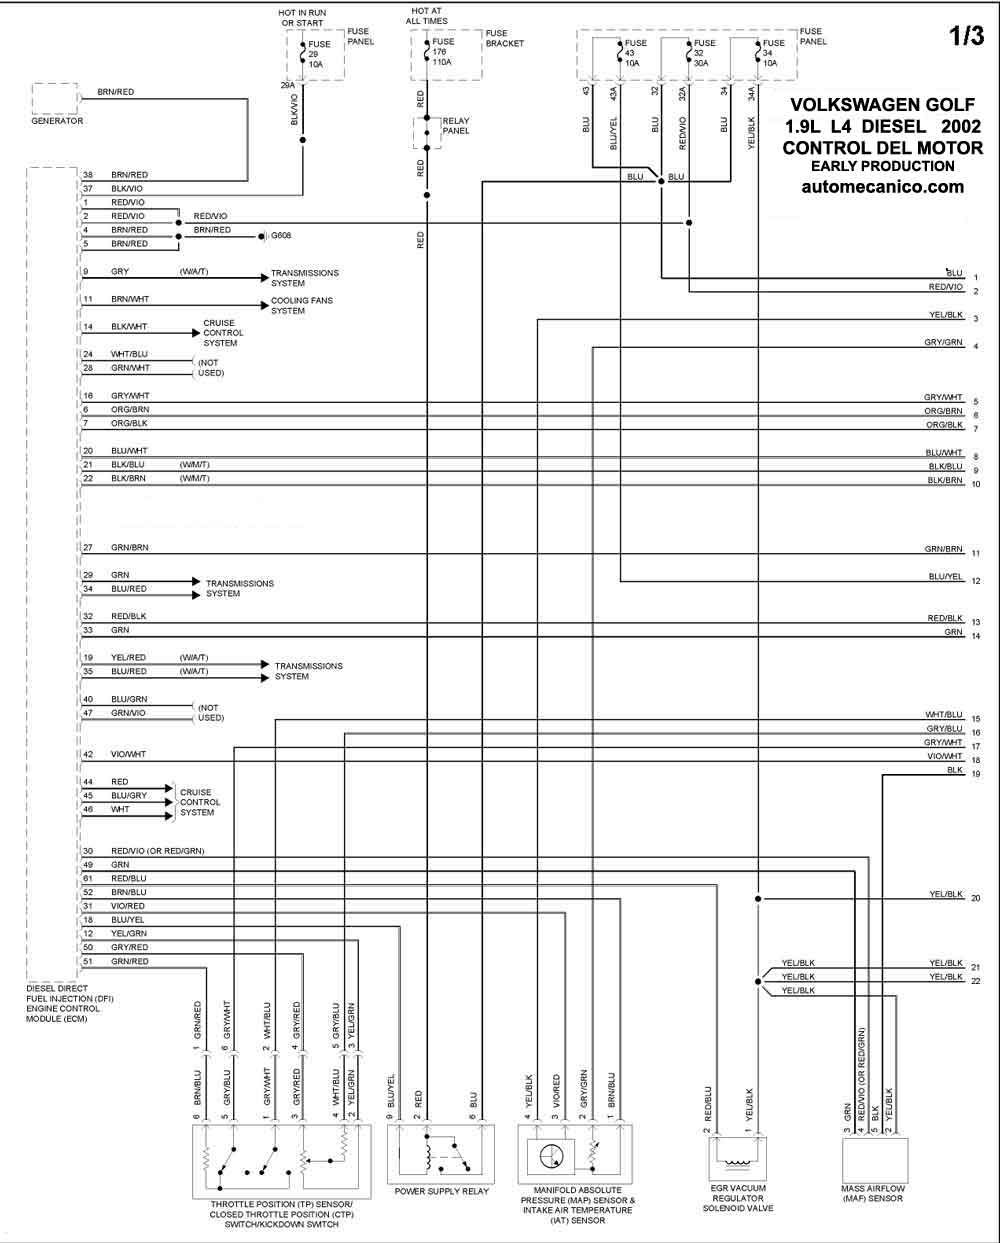 Volkswagen - Diagramas control del motor 2002 - Graphics - Esquemas |  Vehiculos - Motores - Componentes | Mecanica automotriz